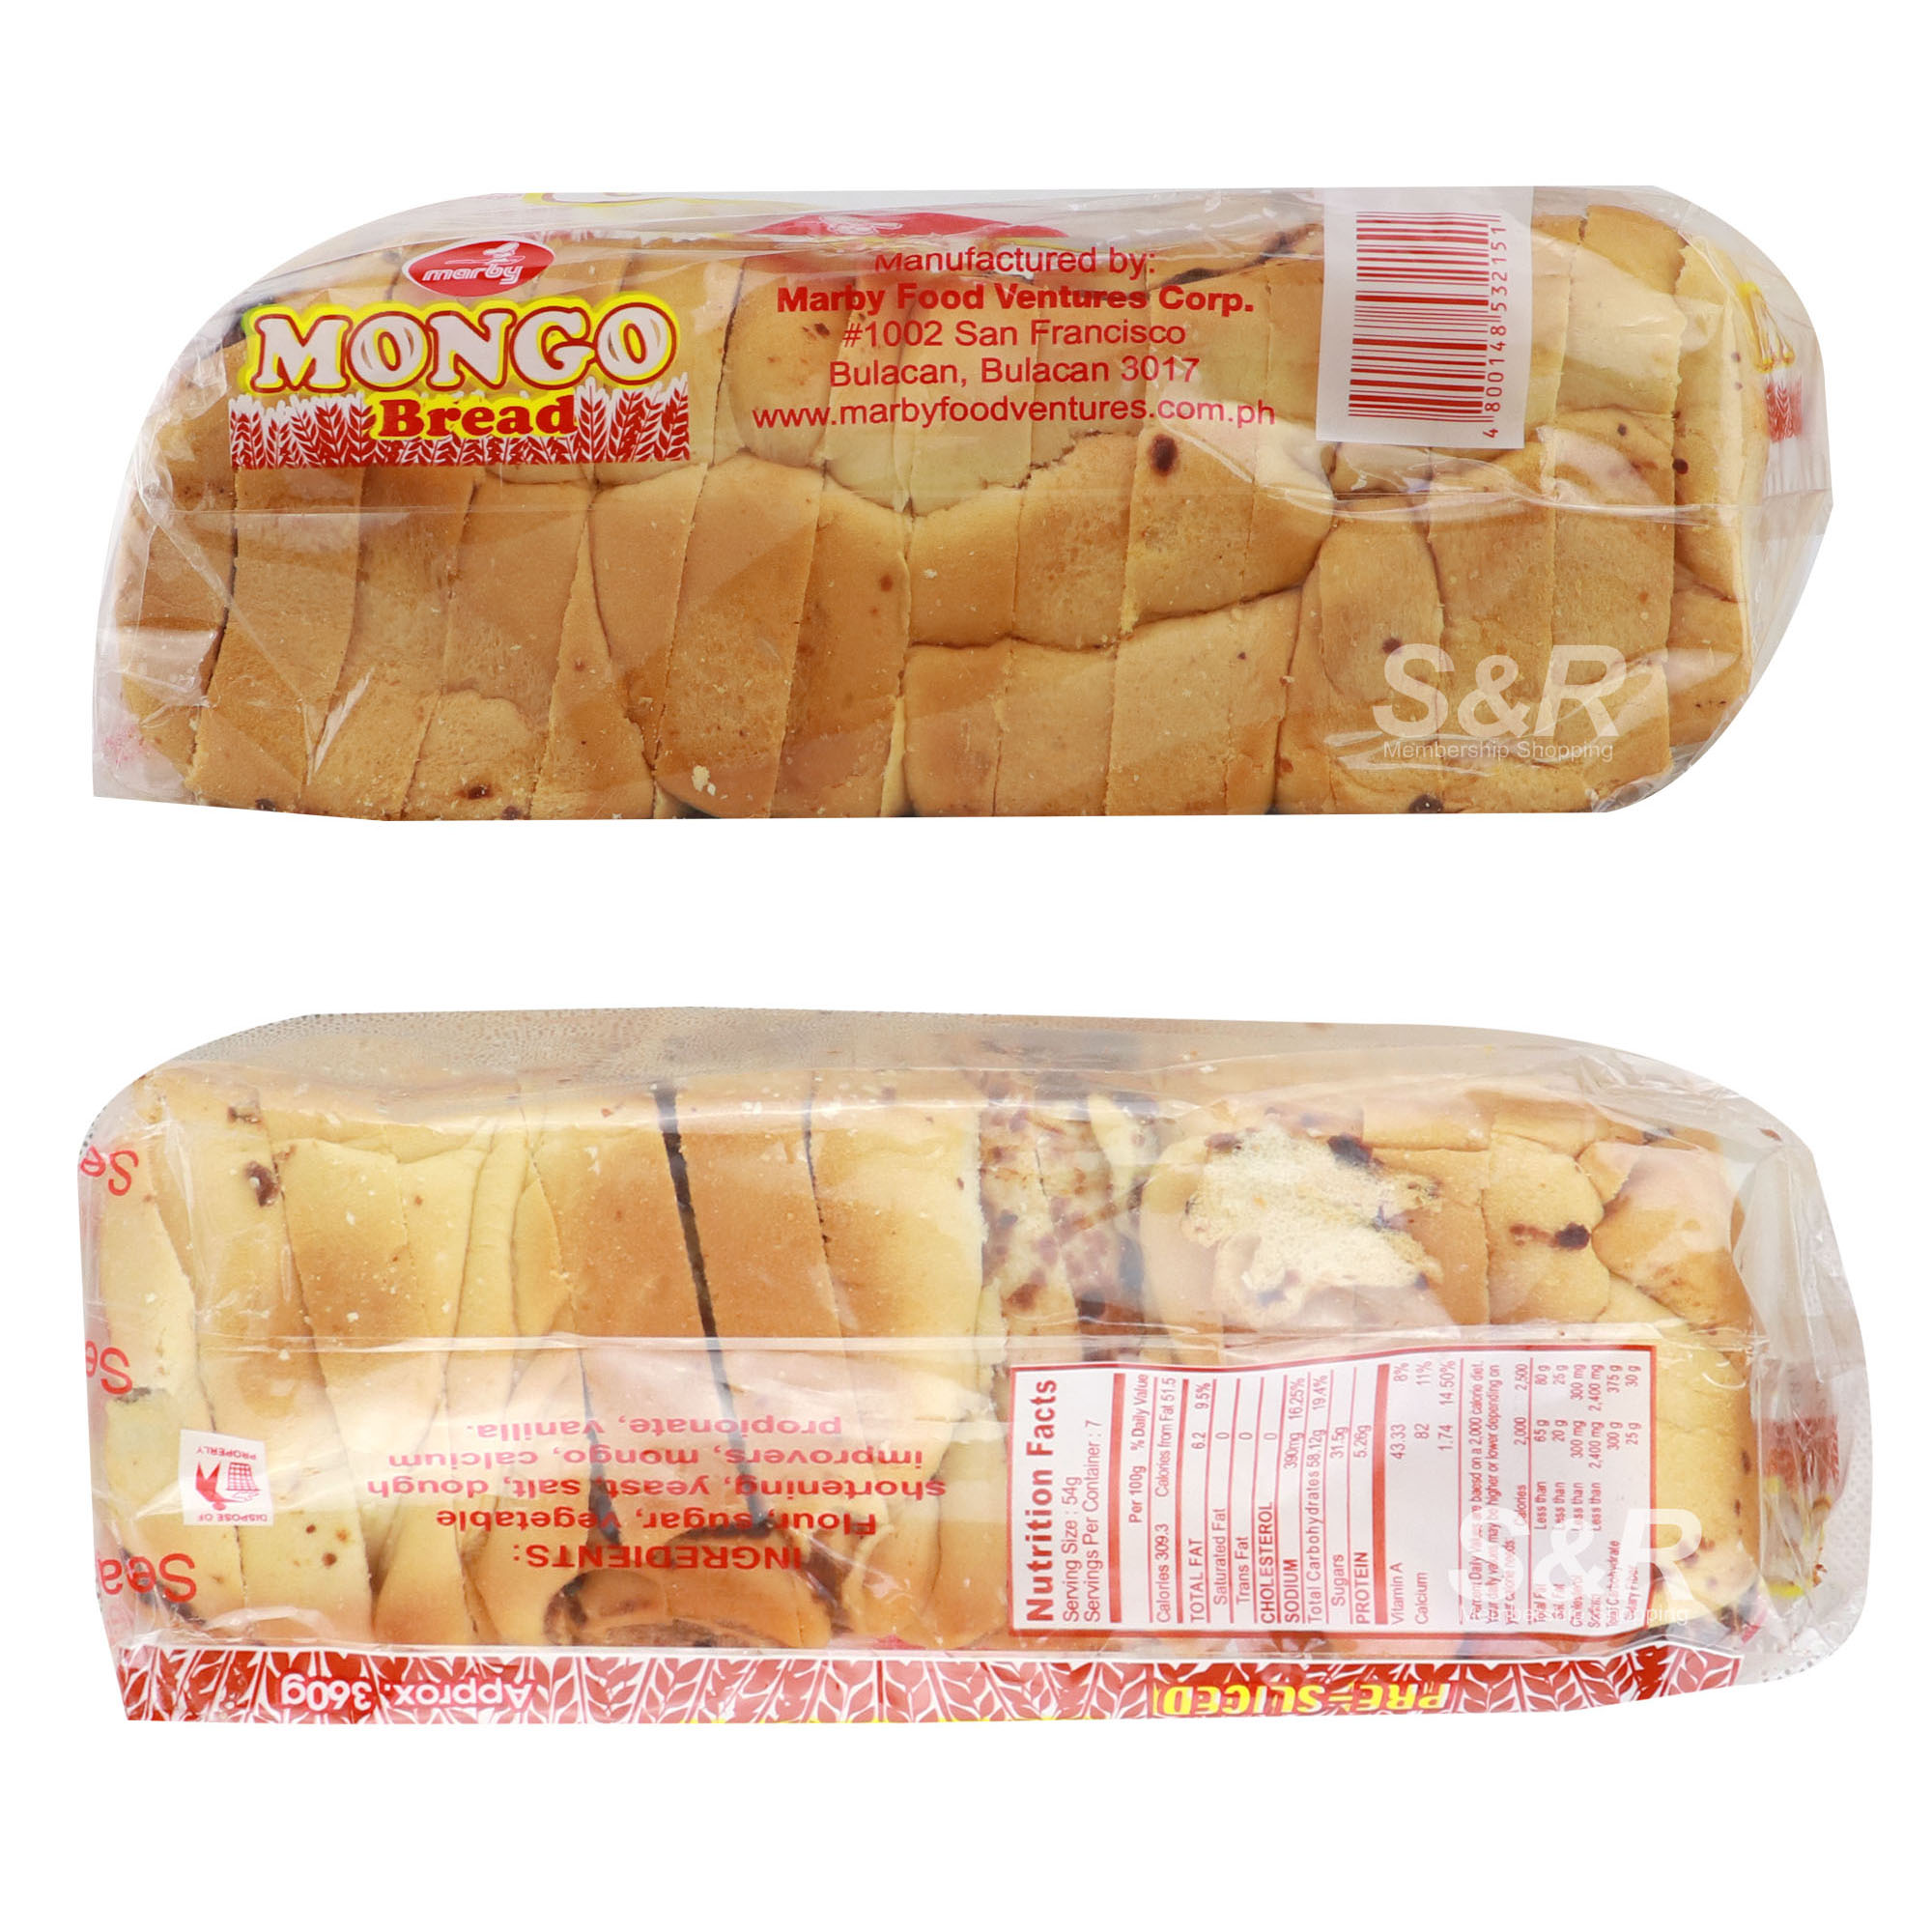 Mongo Bread